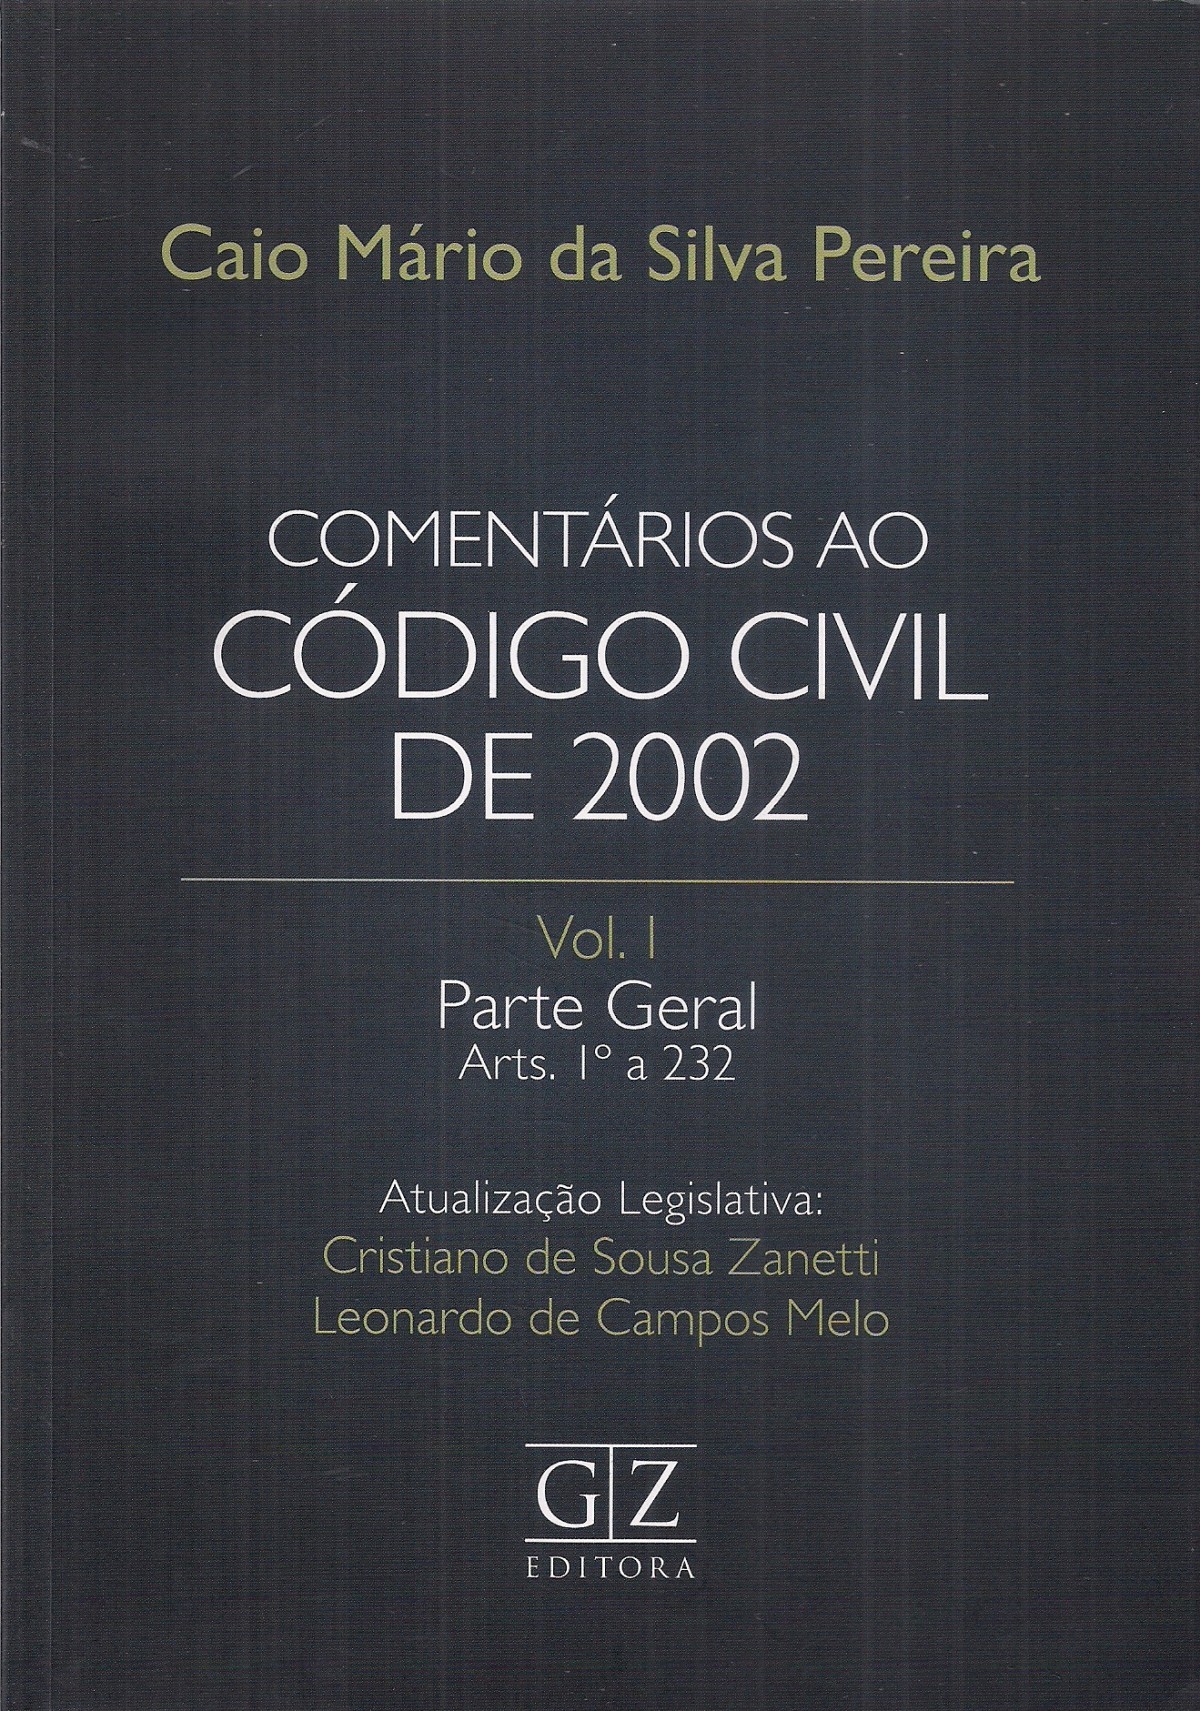 Foto 1 - Comentários ao Código Civil de 2002 - Vol. I